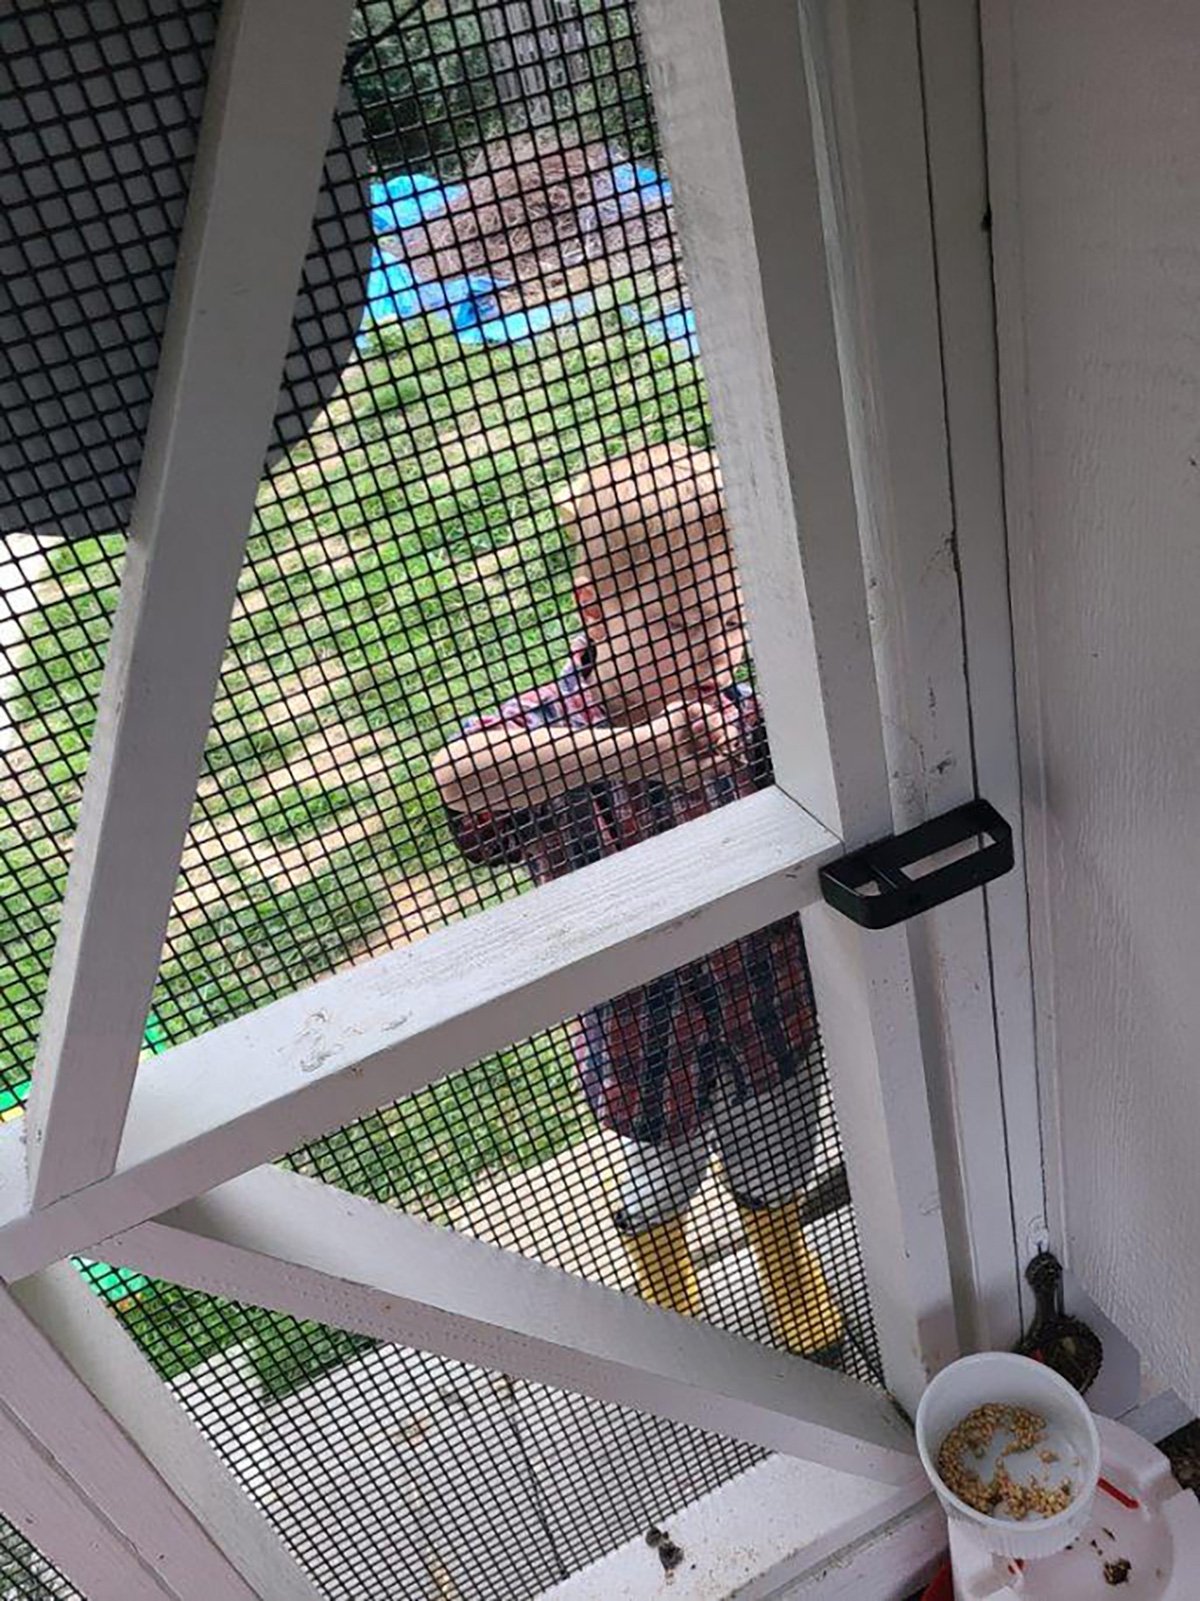 Toddler locks Dad in Chicken Coop 